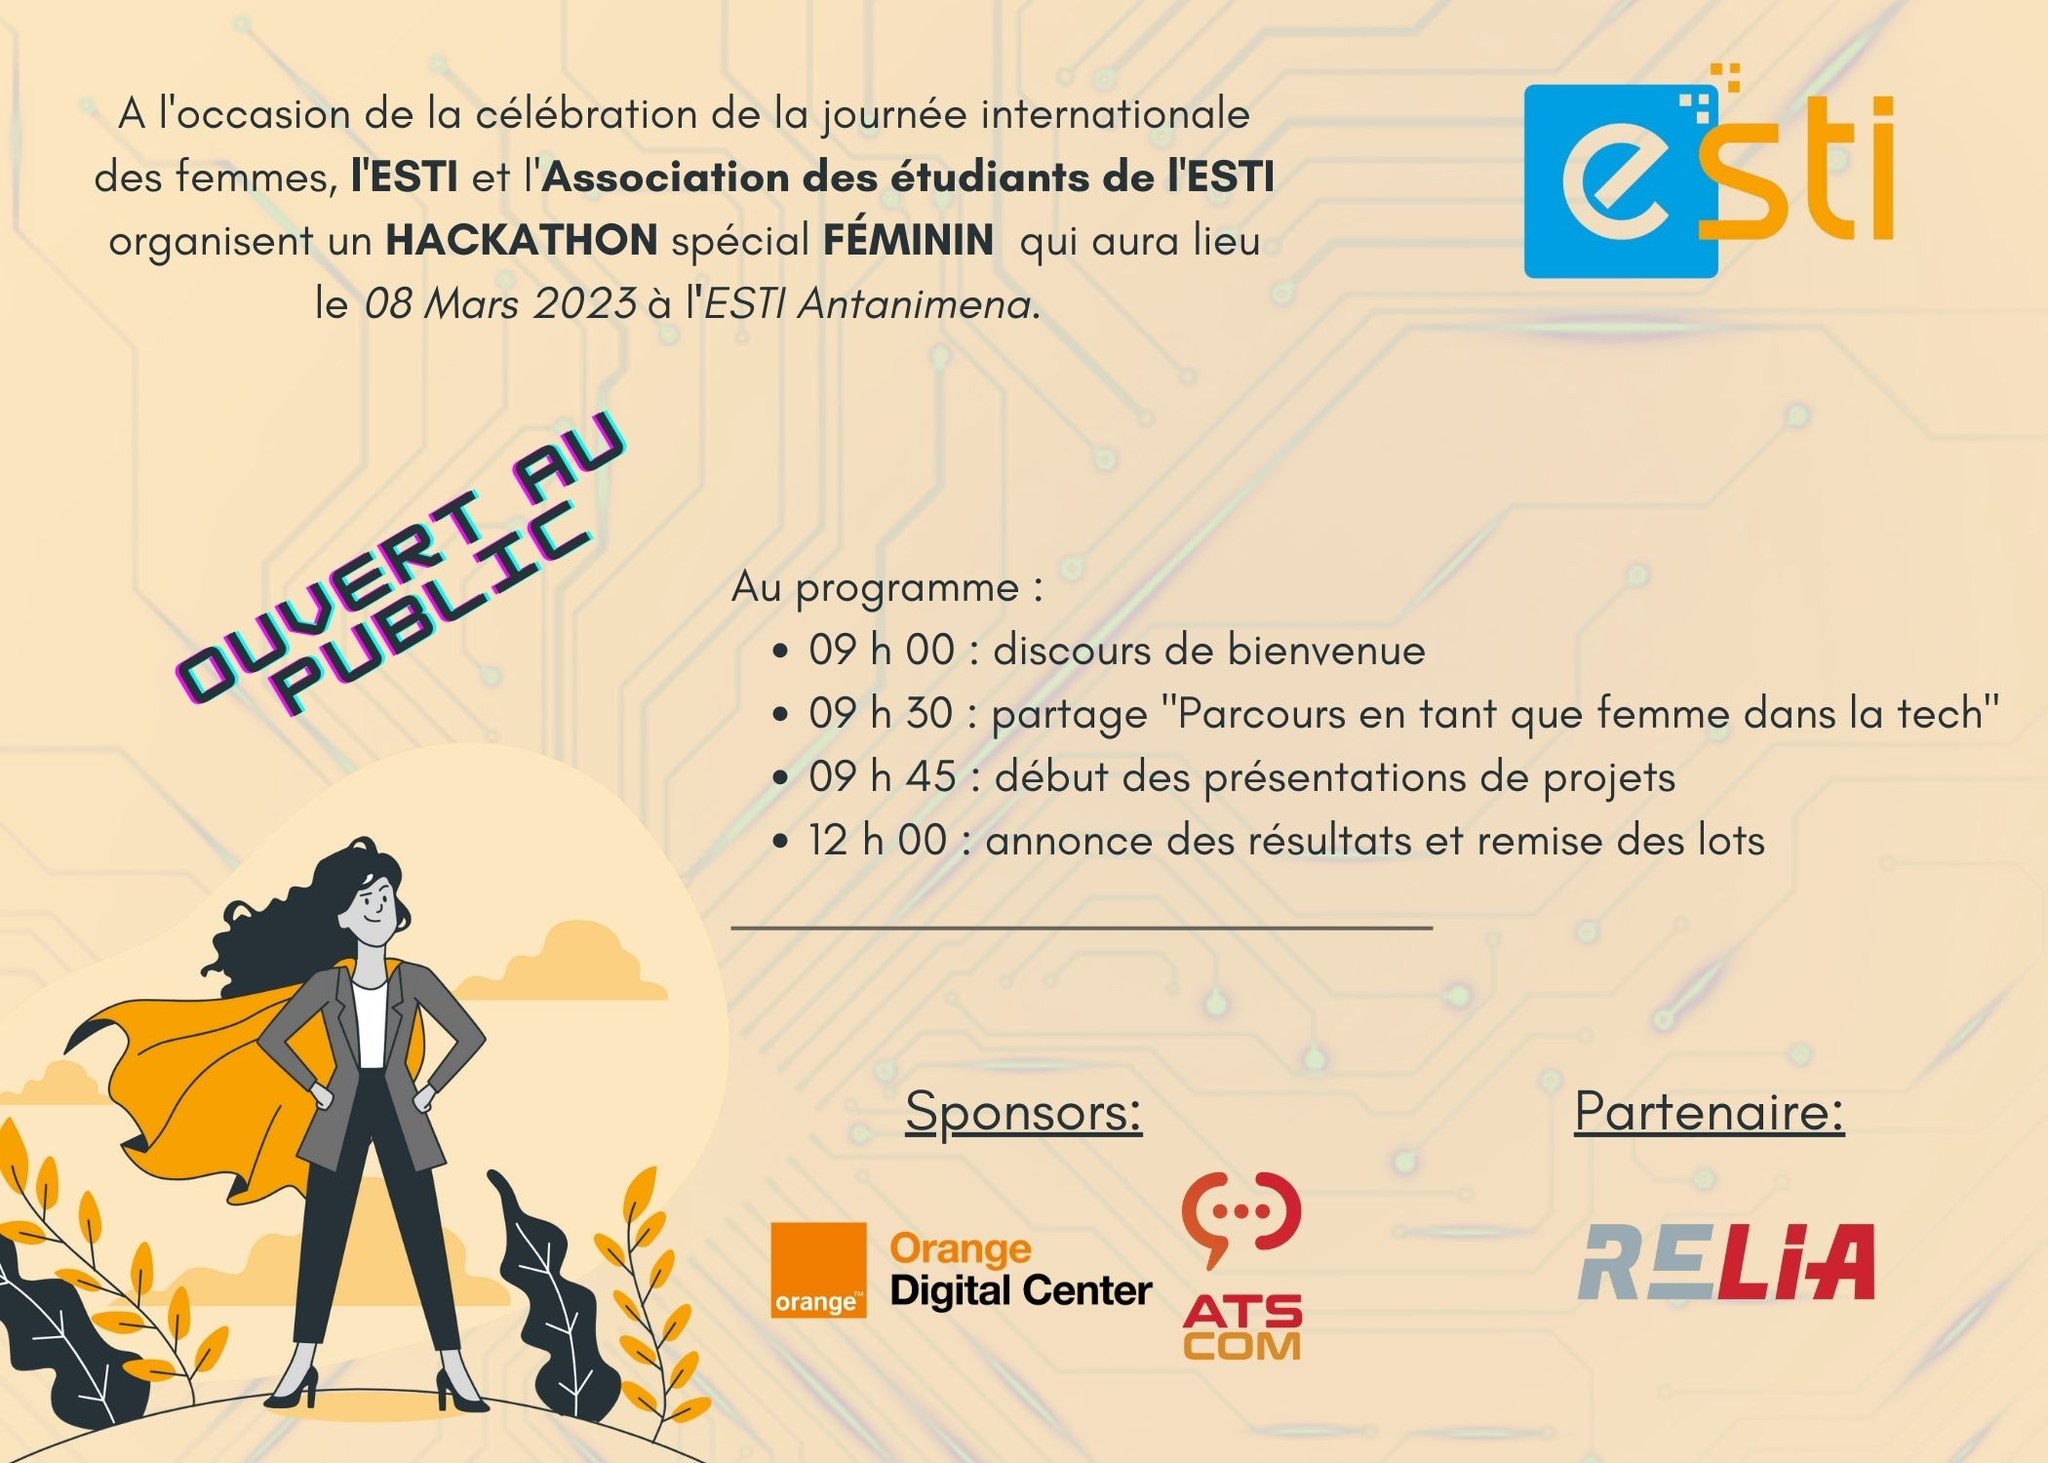 Un Hackathon féminin organisé à Antananarivo pour célébrer le 8 mars 2023